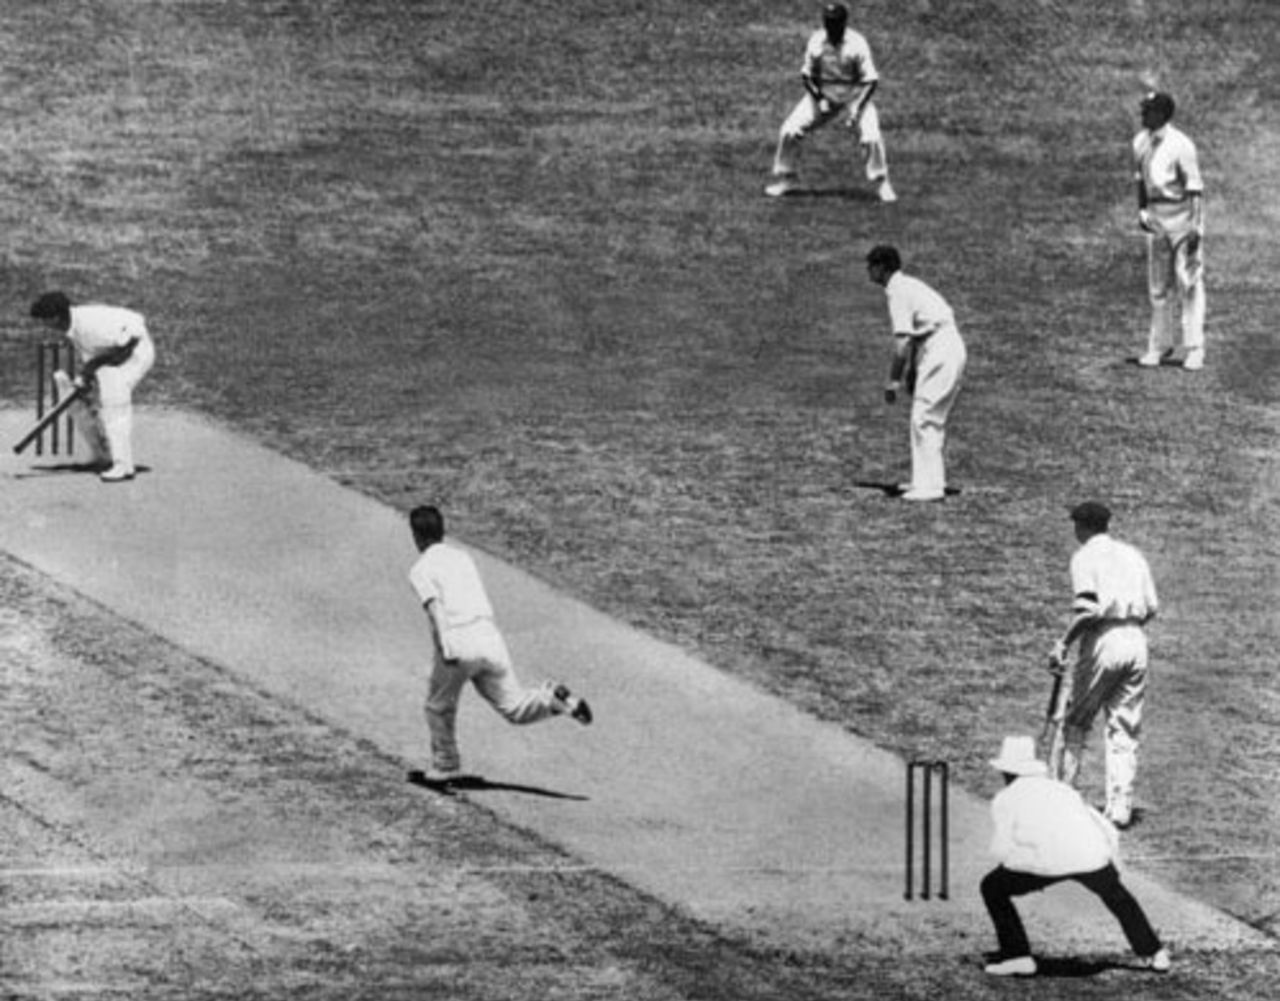 Jack Fingleton ducks a Harold Larwood bouncer, Australia v England, 2nd Test, Melbourne, December 30, 1932